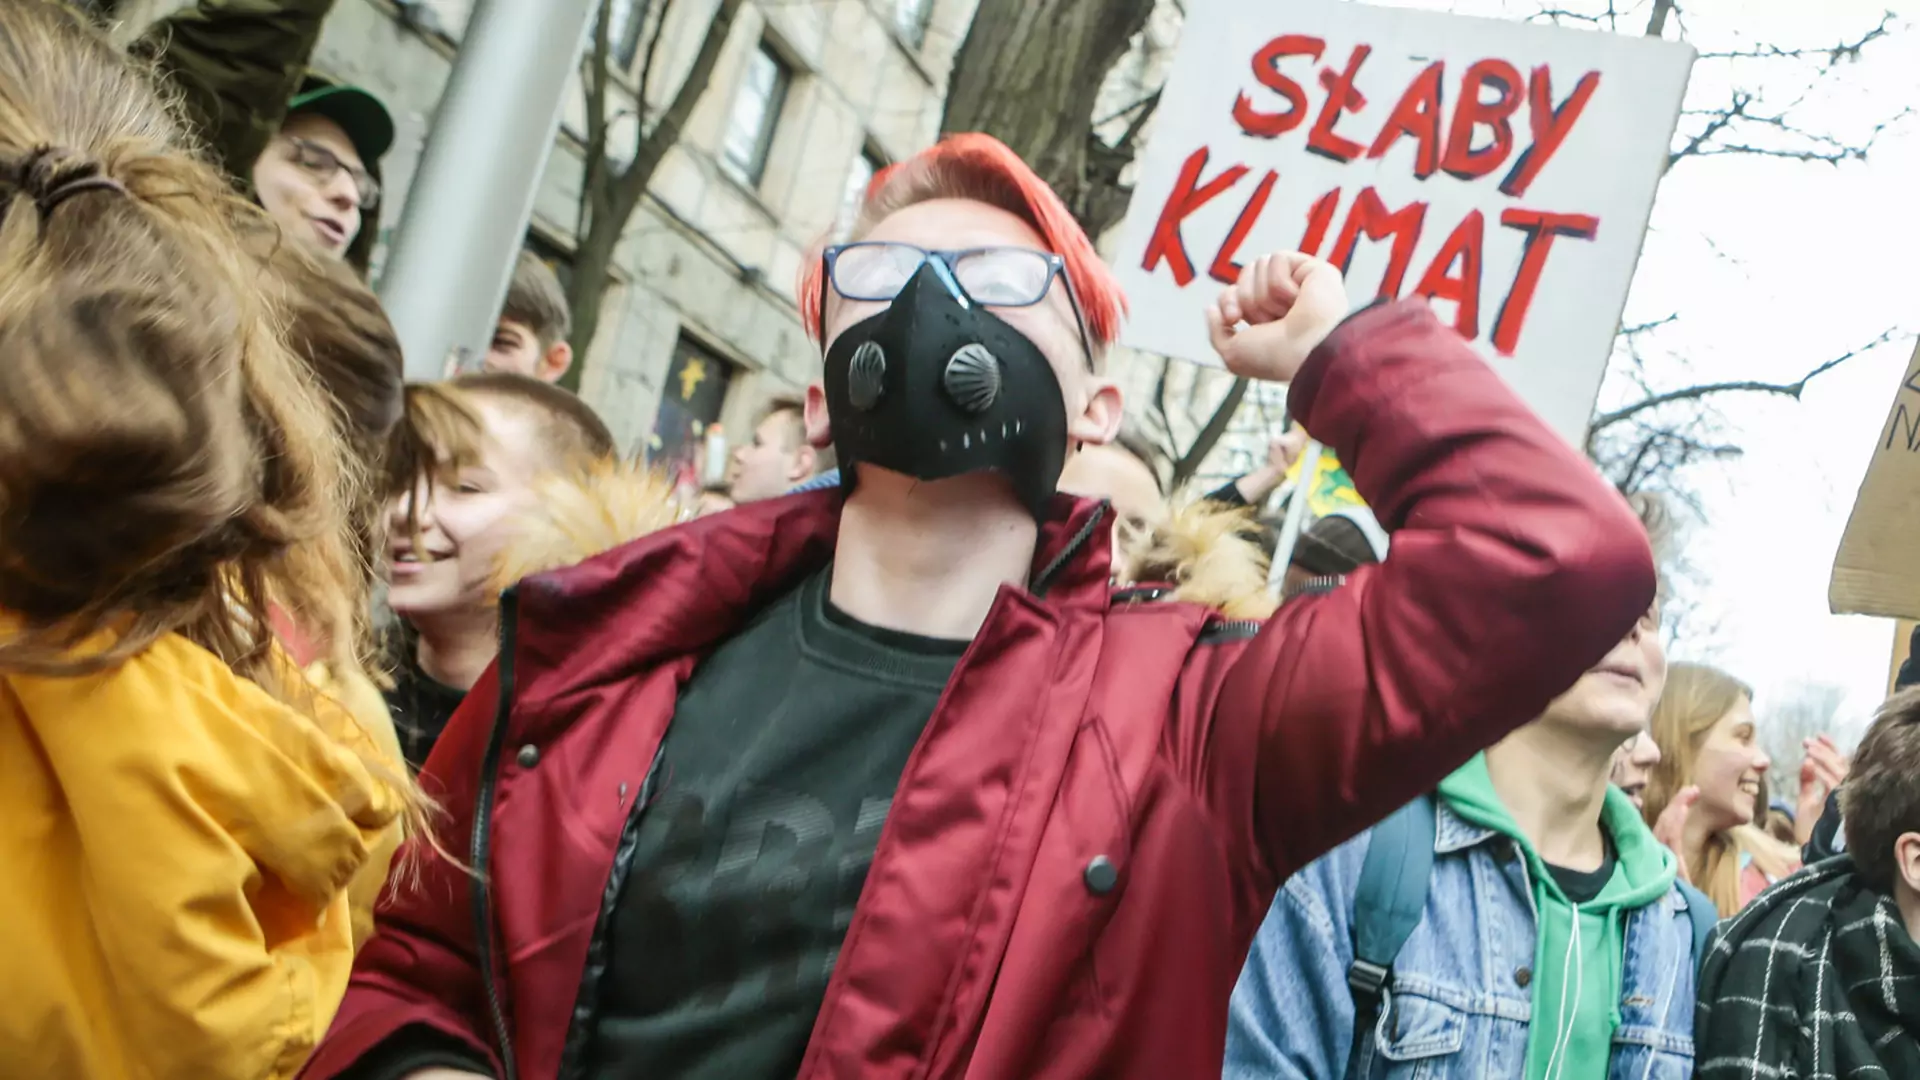 60 miast w Polsce przystąpi do Strajku Klimatycznego. Nauczycielu, zwolnij dzieci z lekcji